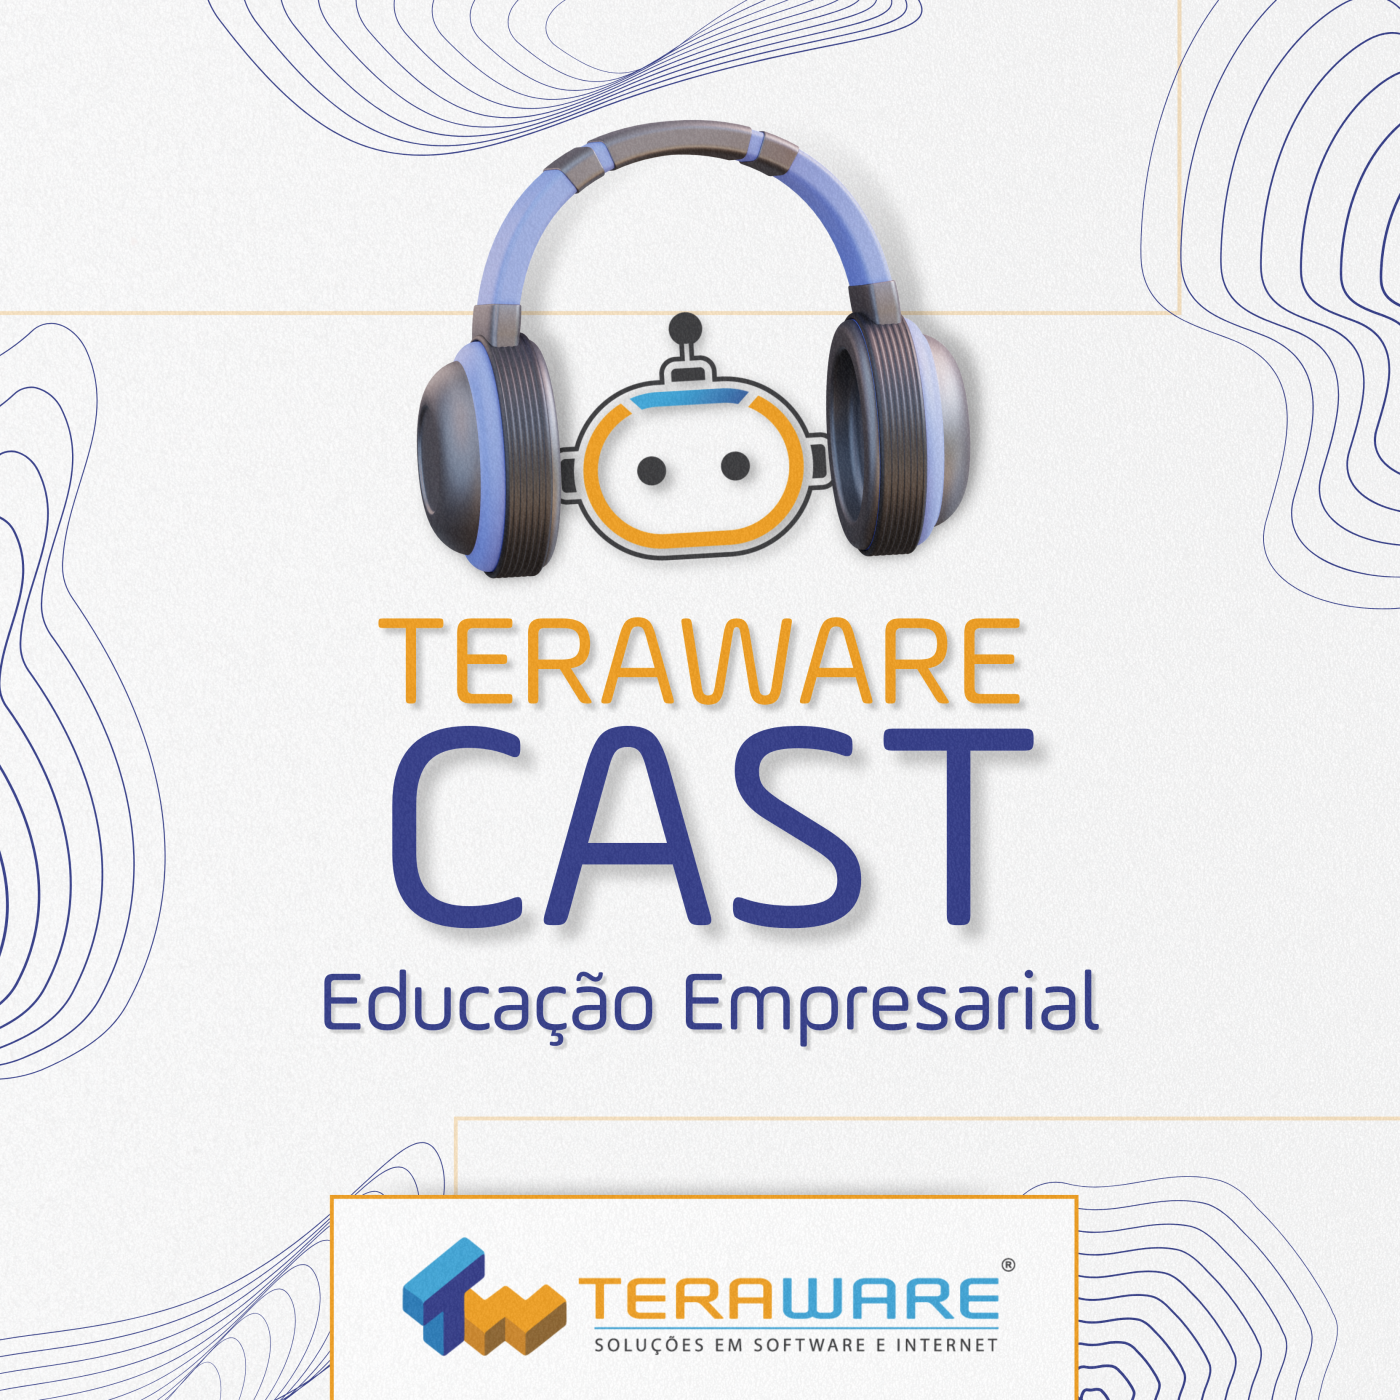 Teraware Cast - Educação Empresarial